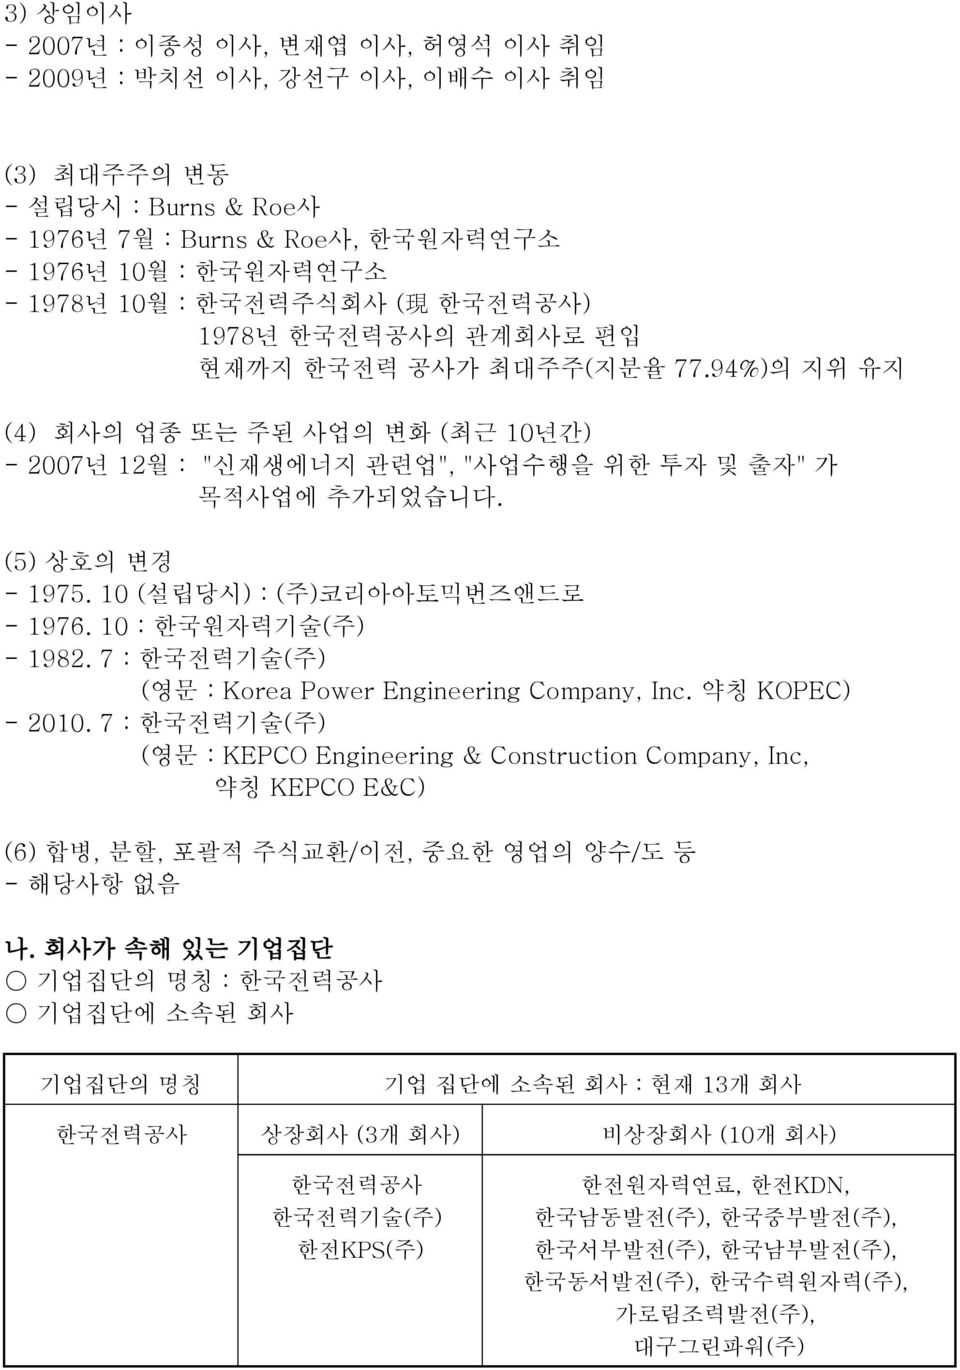 10 (설립당시) : (주)코리아아토믹번즈앤드로 - 1976. 10 : 한국원자력기술(주) - 1982. 7 : 한국전력기술(주) (영문 : Korea Power Engineering Company, Inc. 약칭 KOPEC) - 2010.